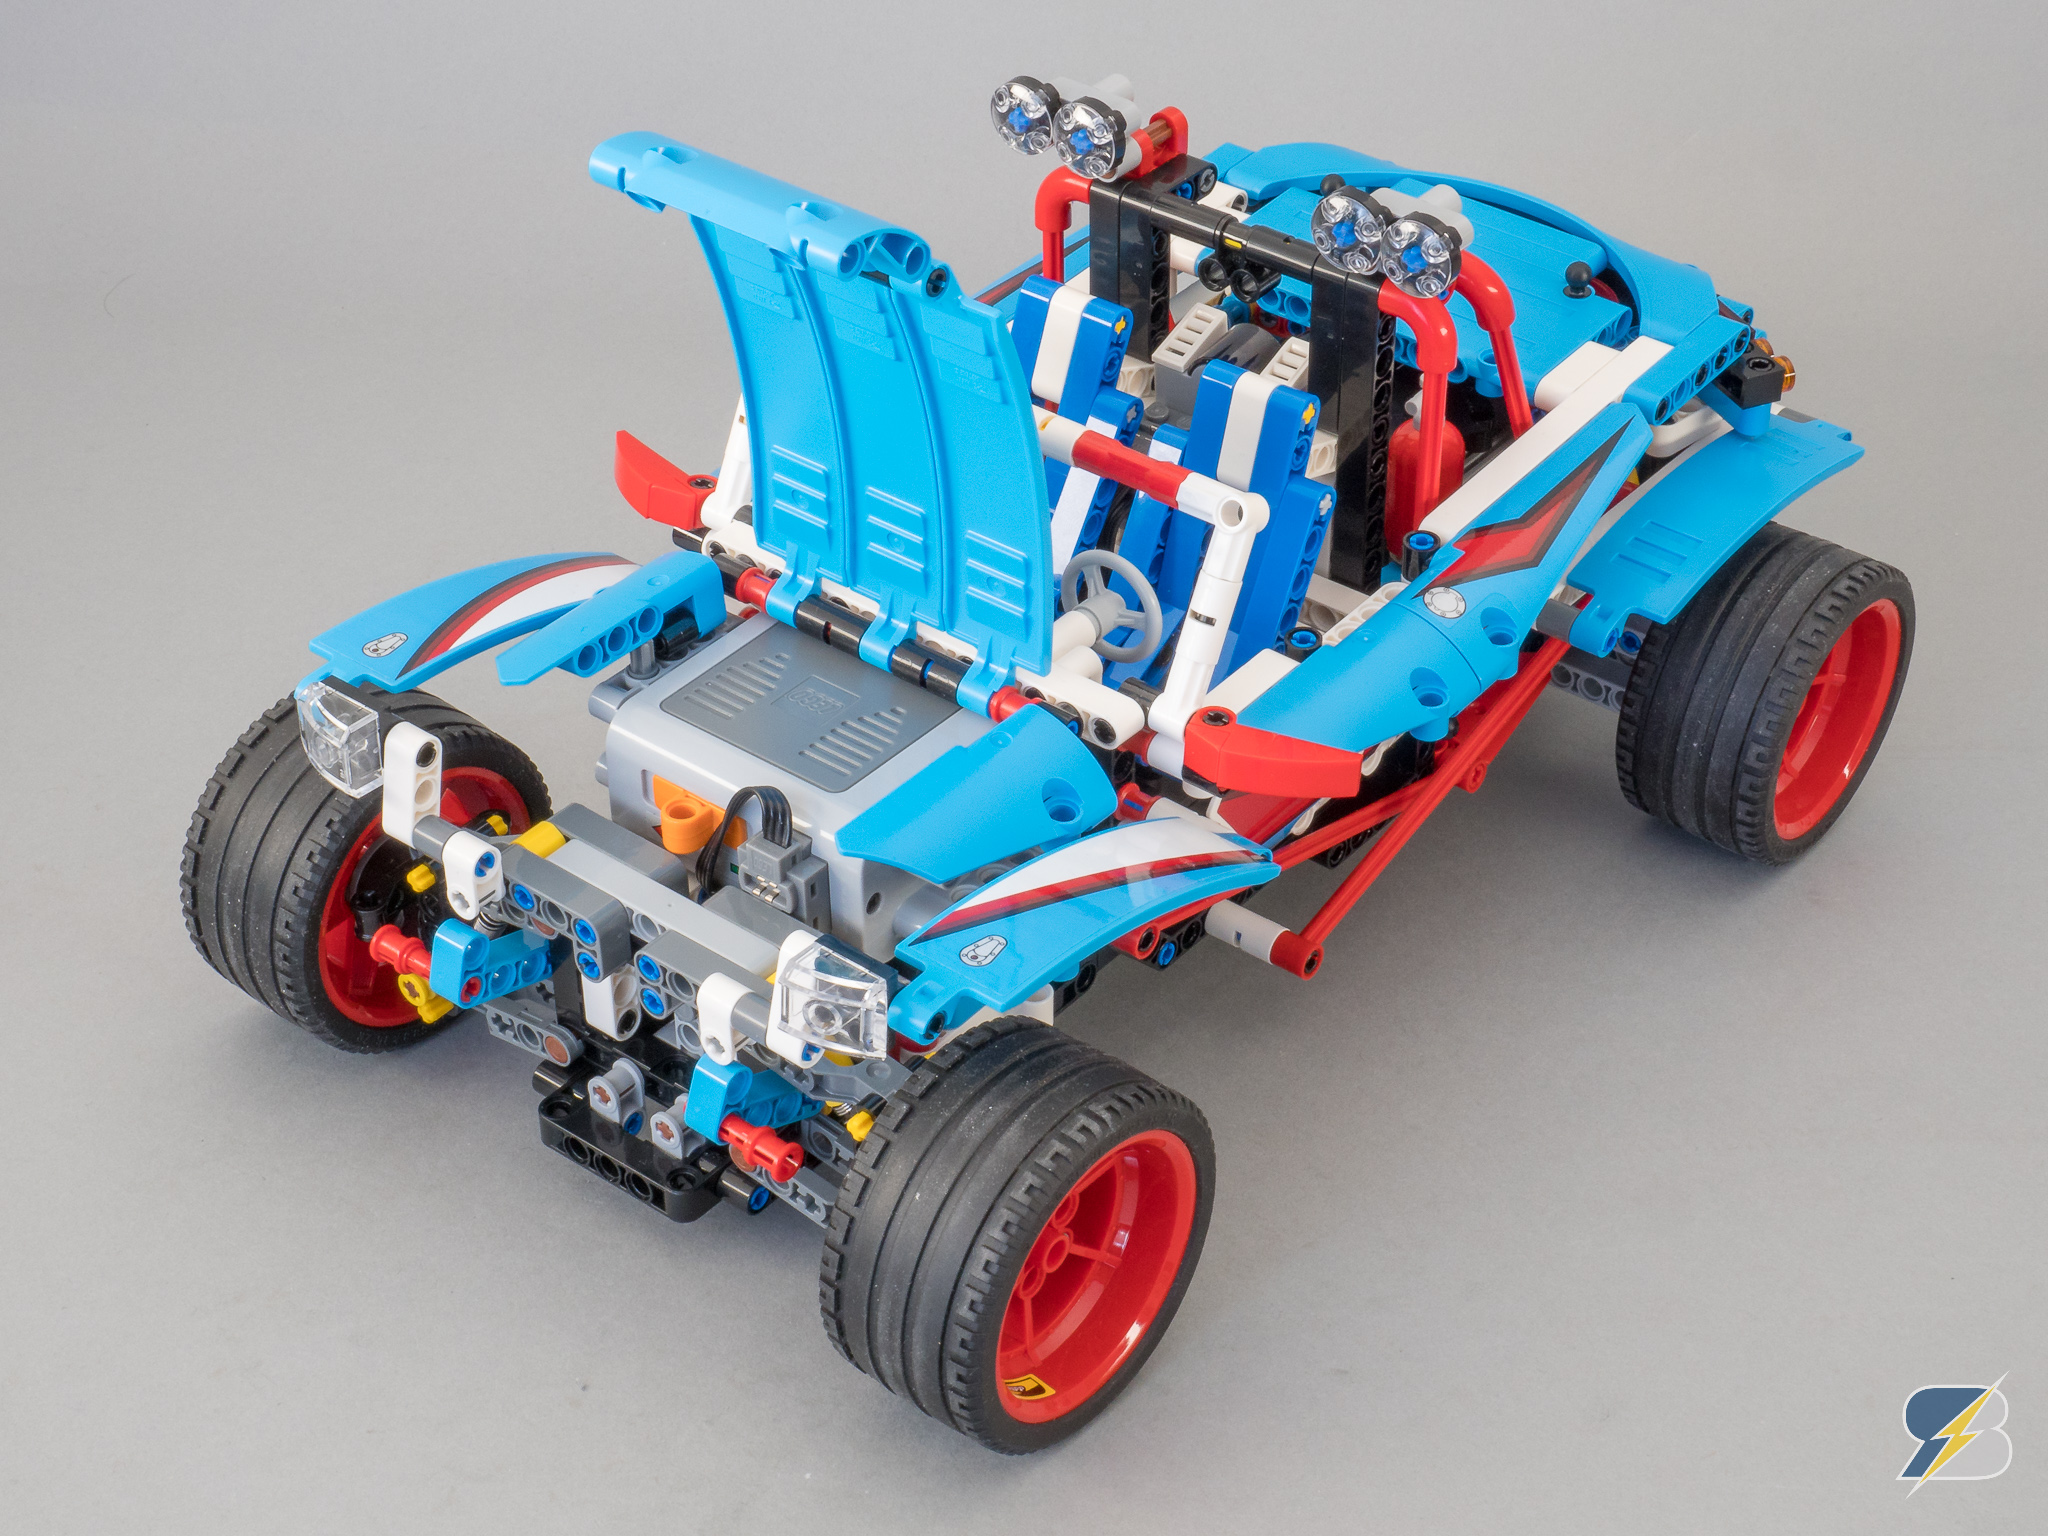 lego technic 42077 buggy